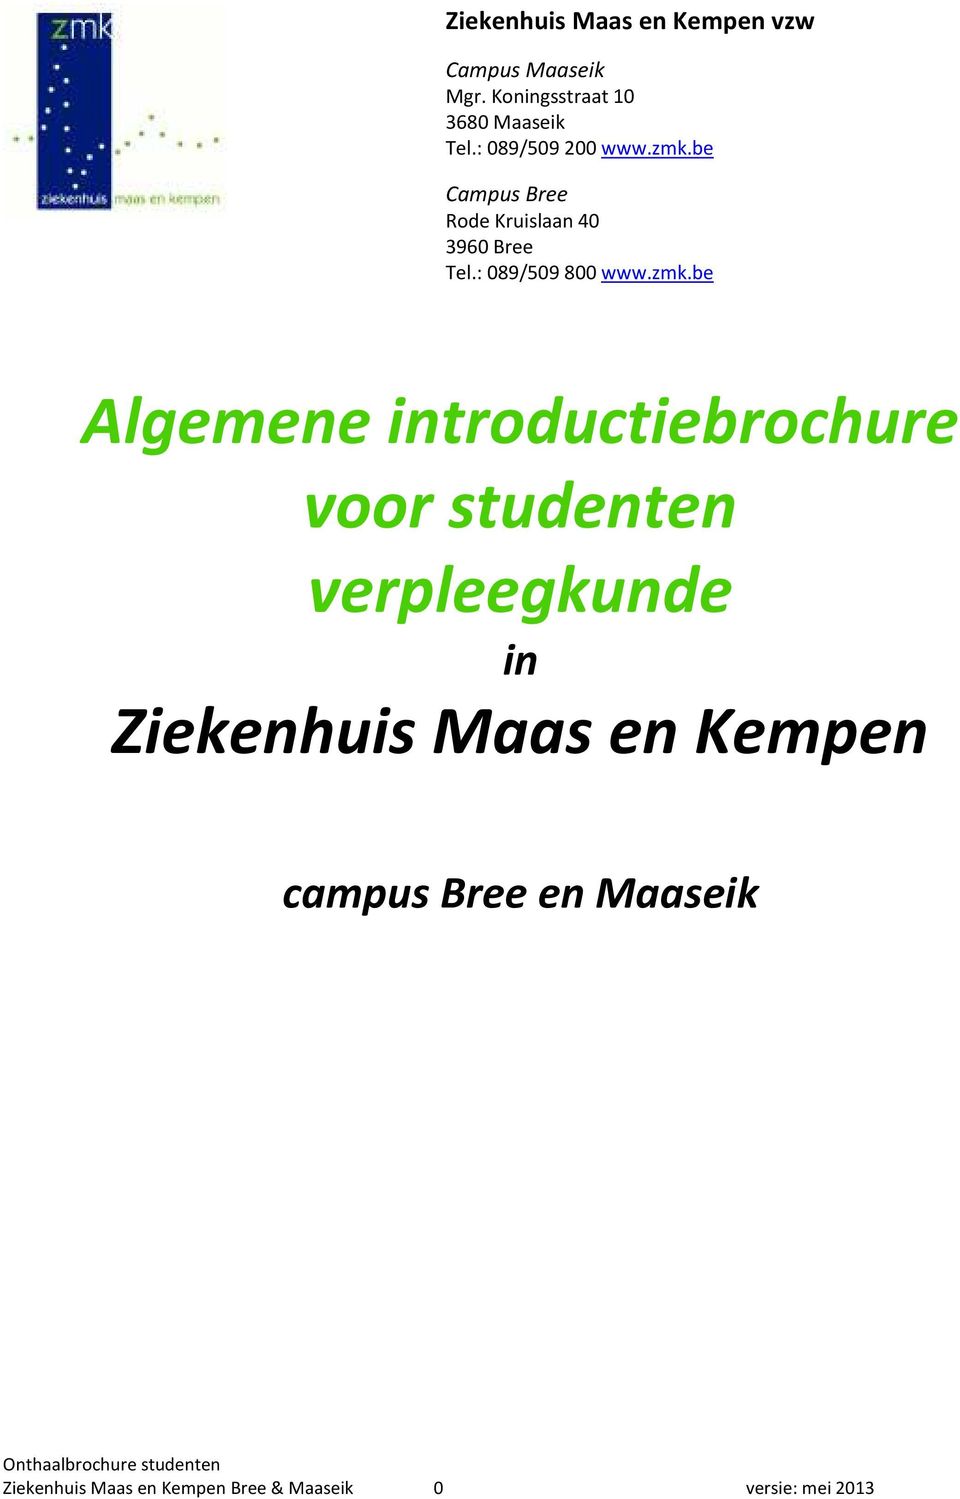 zmk.be Algemene introductiebrochure voor studenten verpleegkunde in Ziekenhuis Maas en